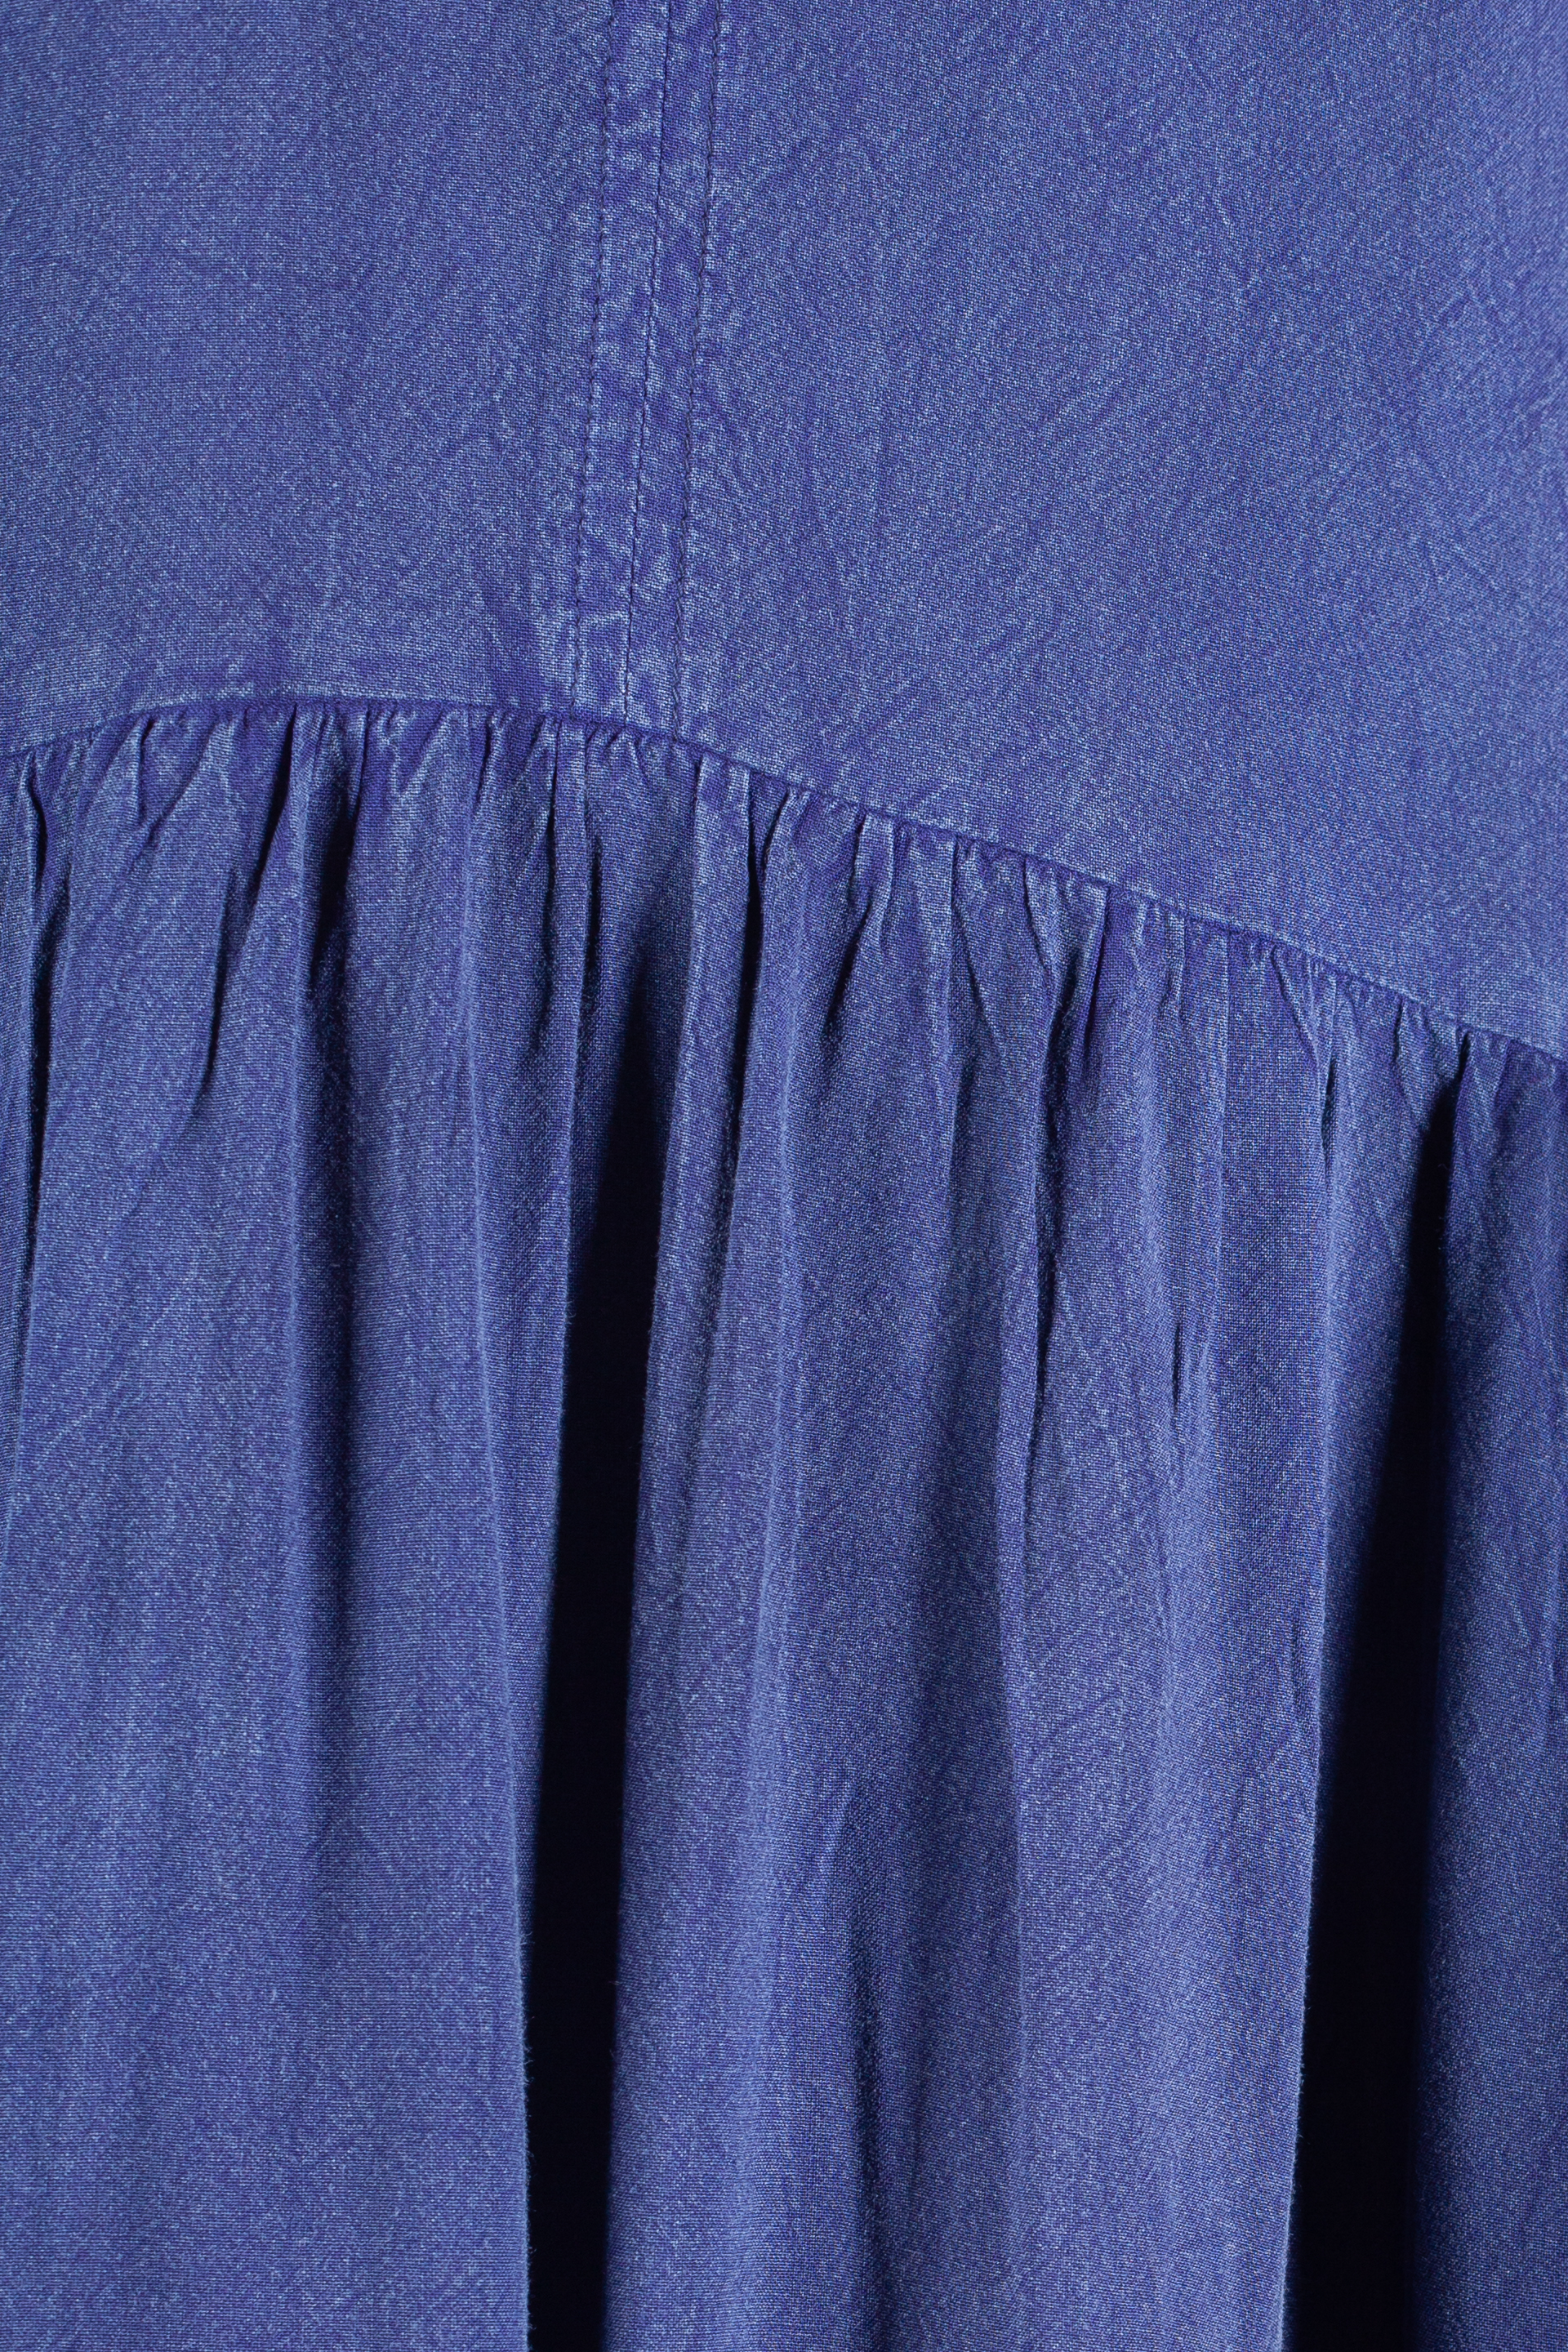 Dress BLUE SEVEN 184164-570